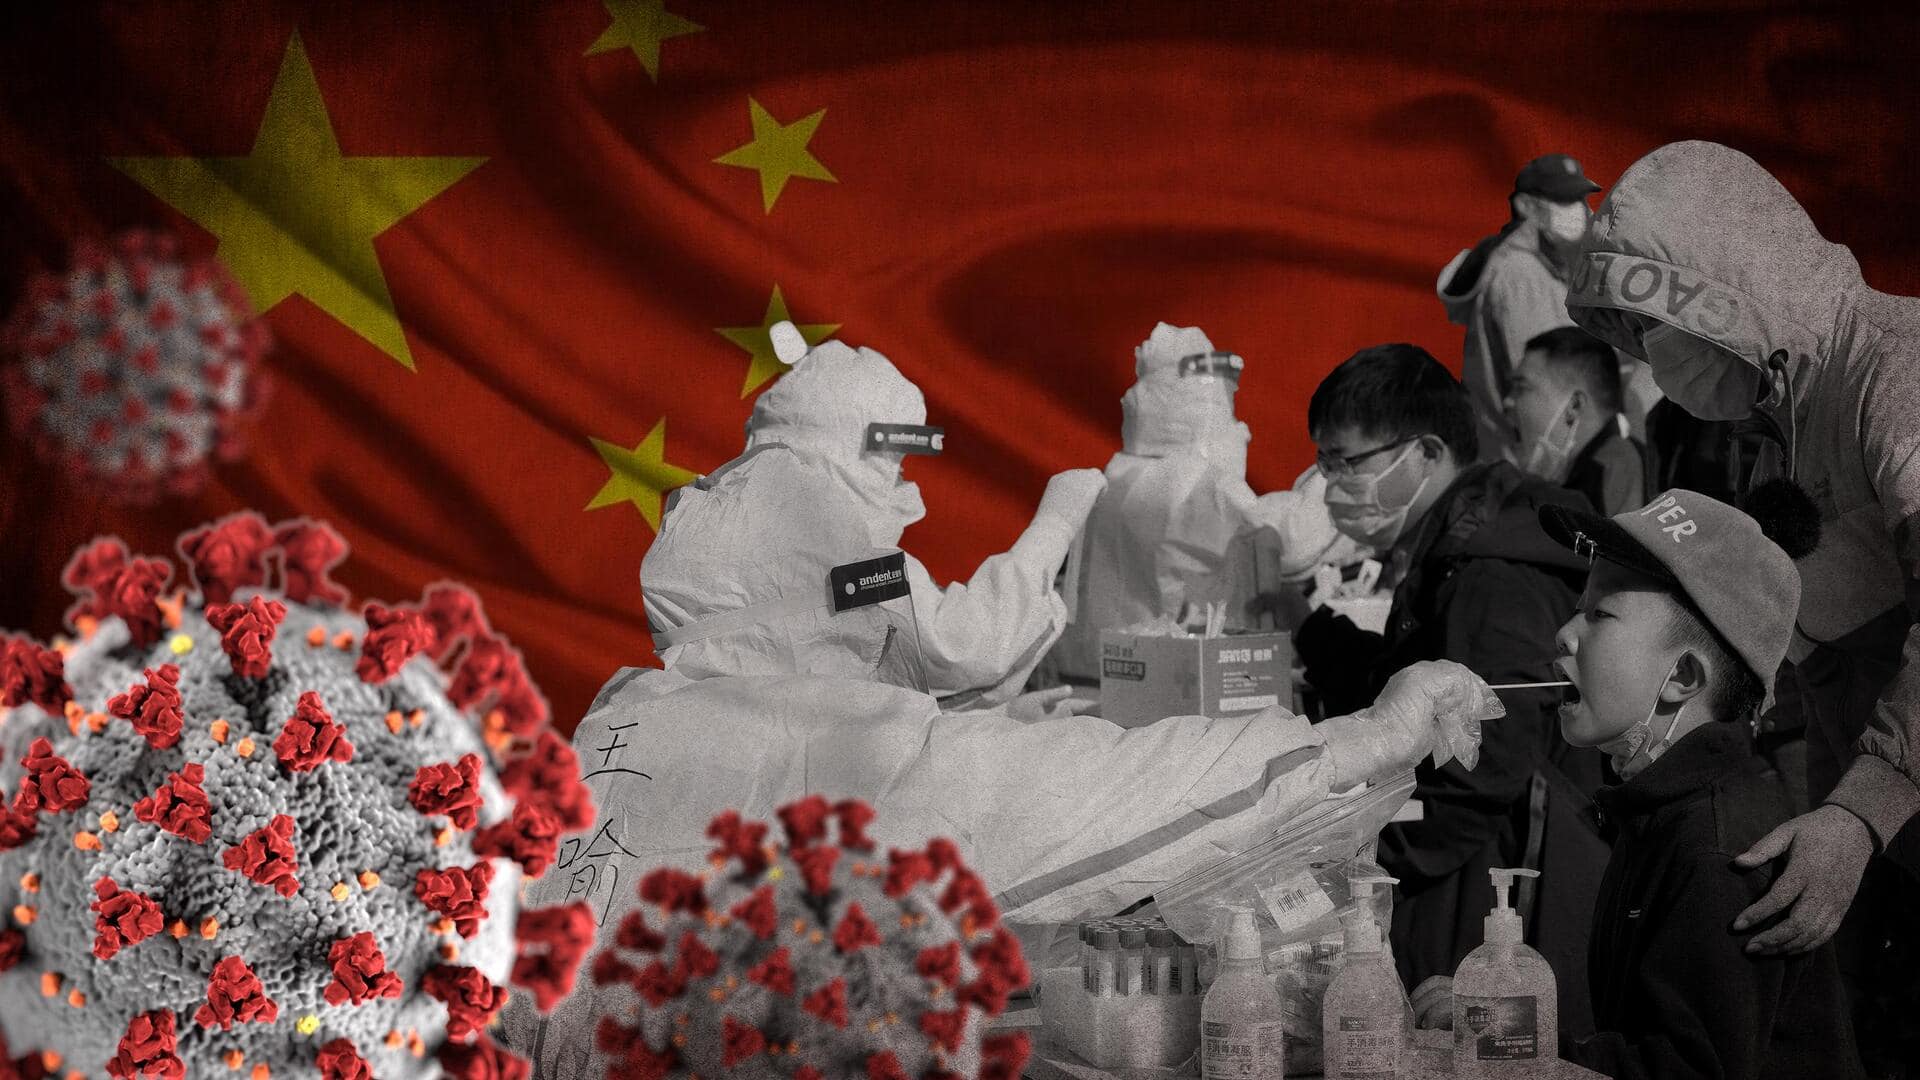 चीन ने कोरोना वायरस से हुई मौतों के आंकड़े को हटाया, वास्तविक मौतें छिपाने का आरोप